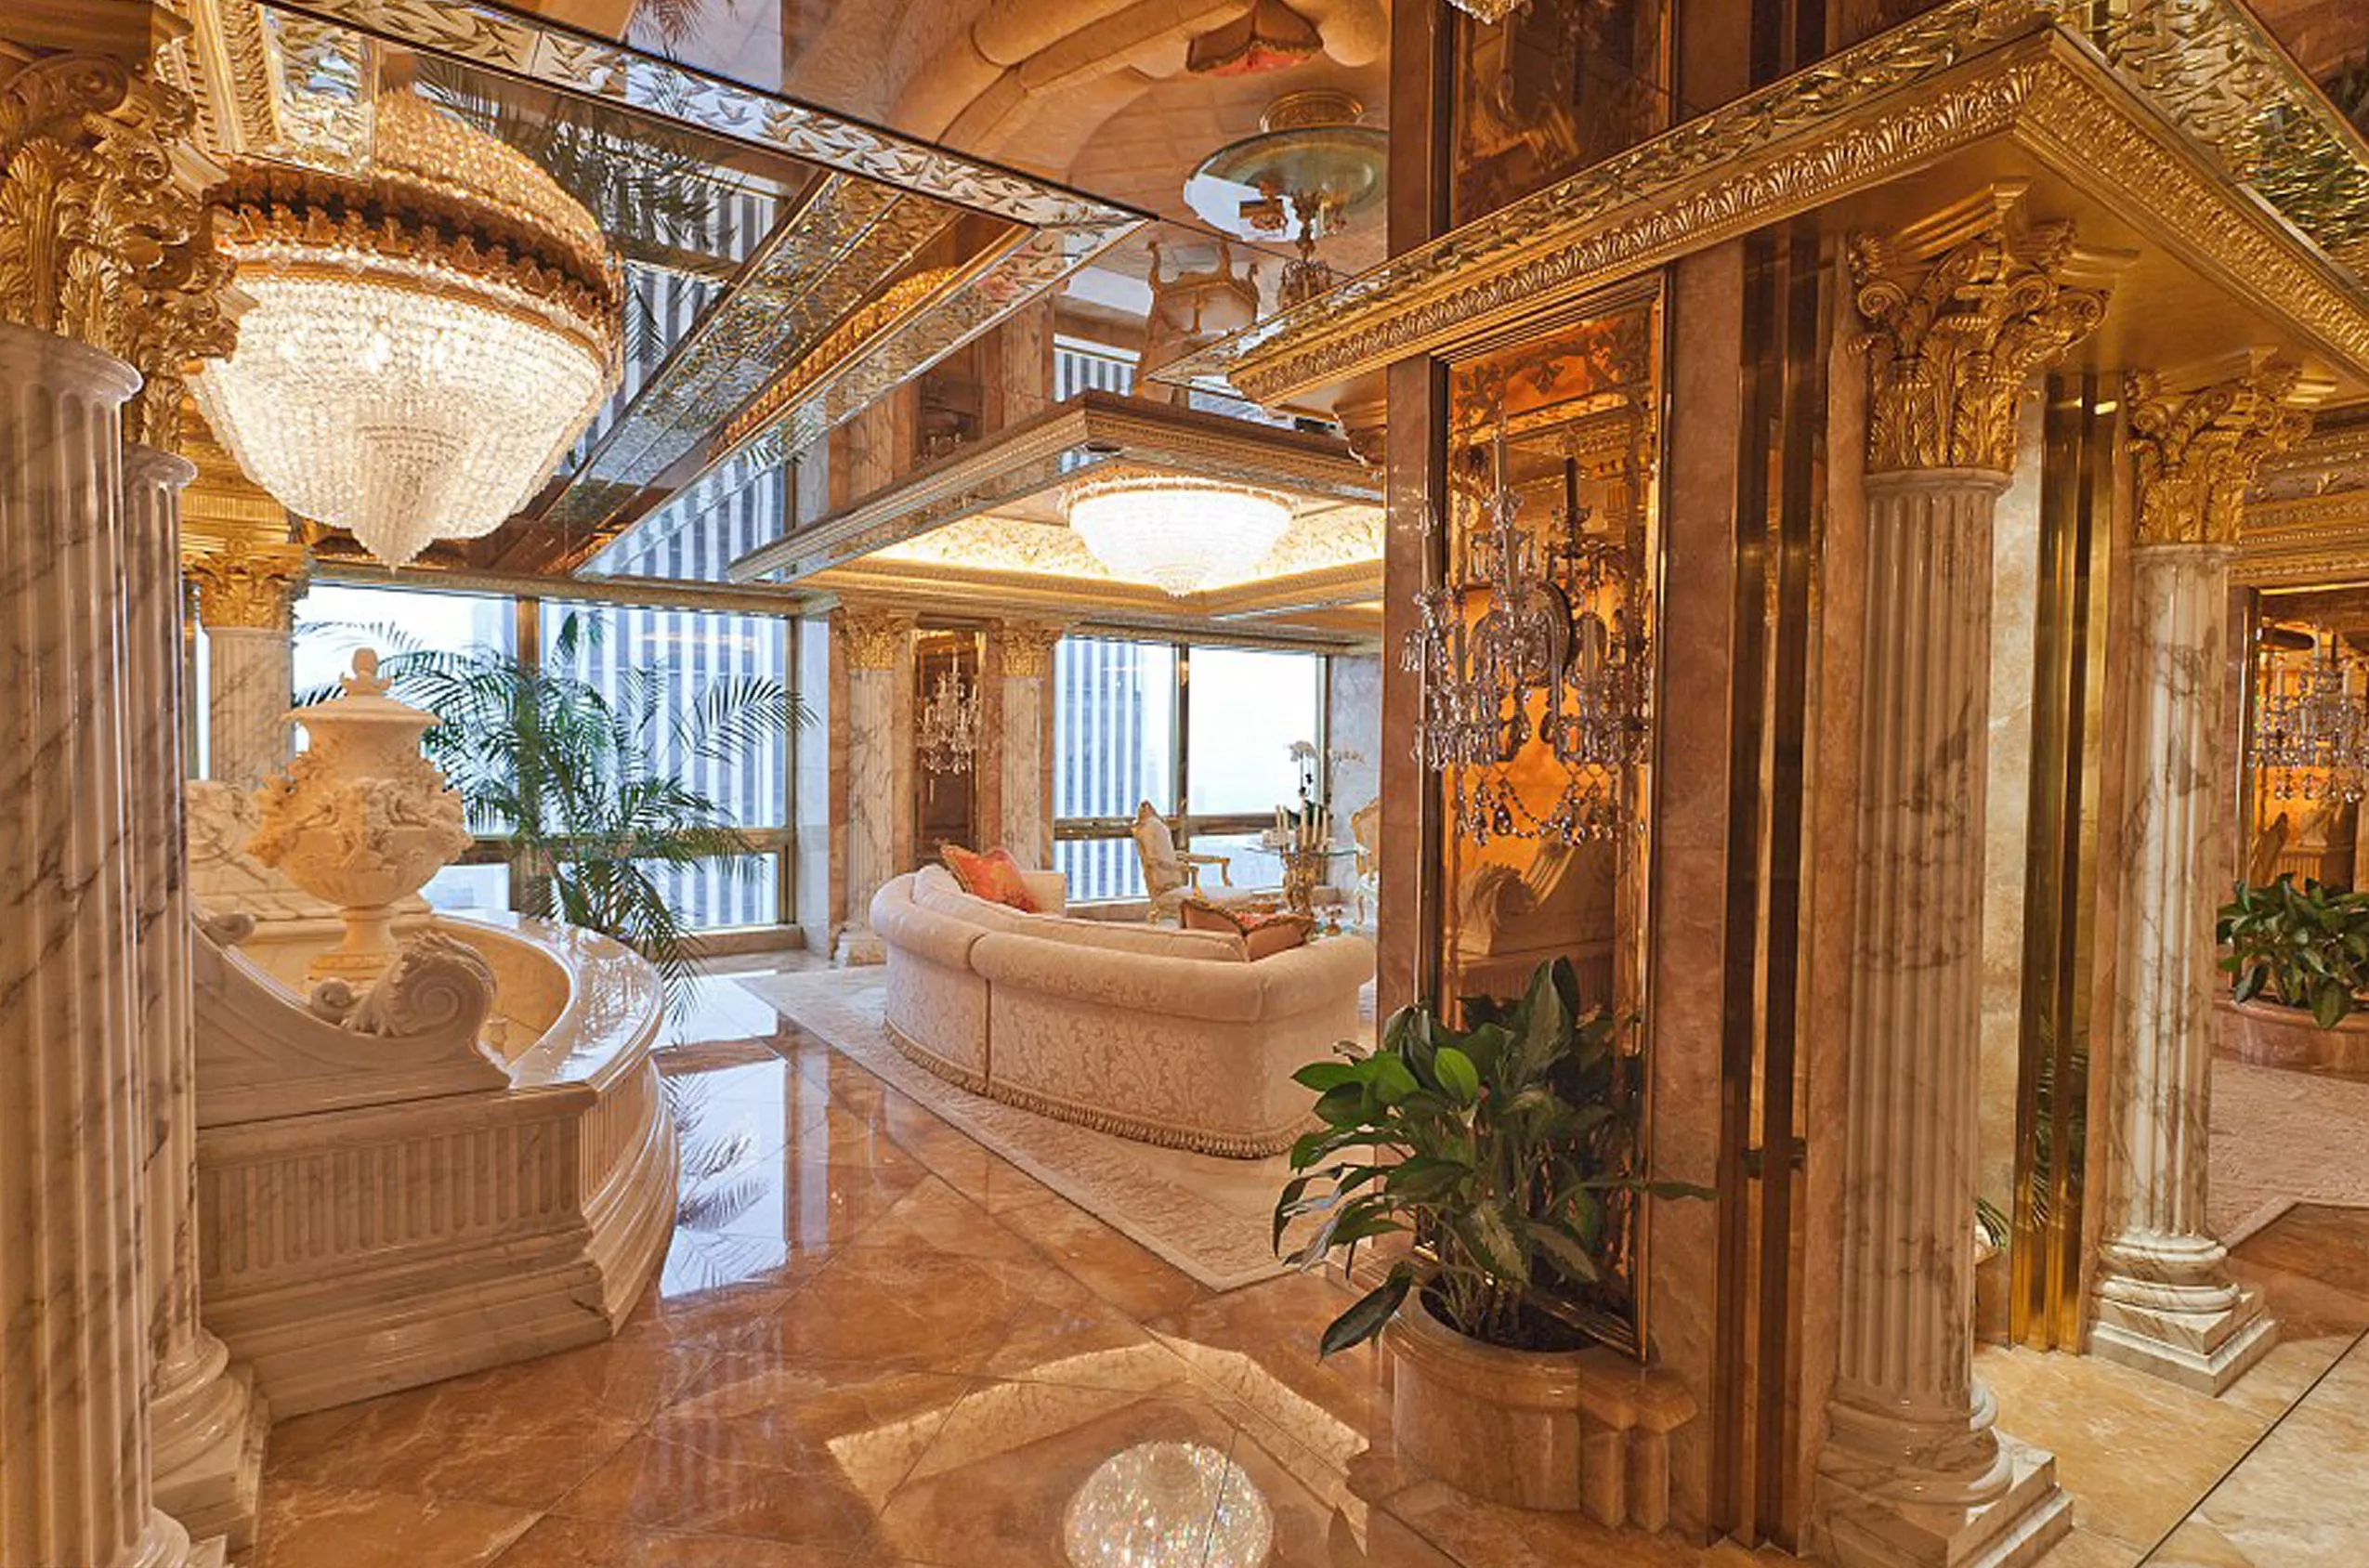 صور من داخل قصر دونالد ترامب الذي تبلغ قيمته 200 مليون دولار